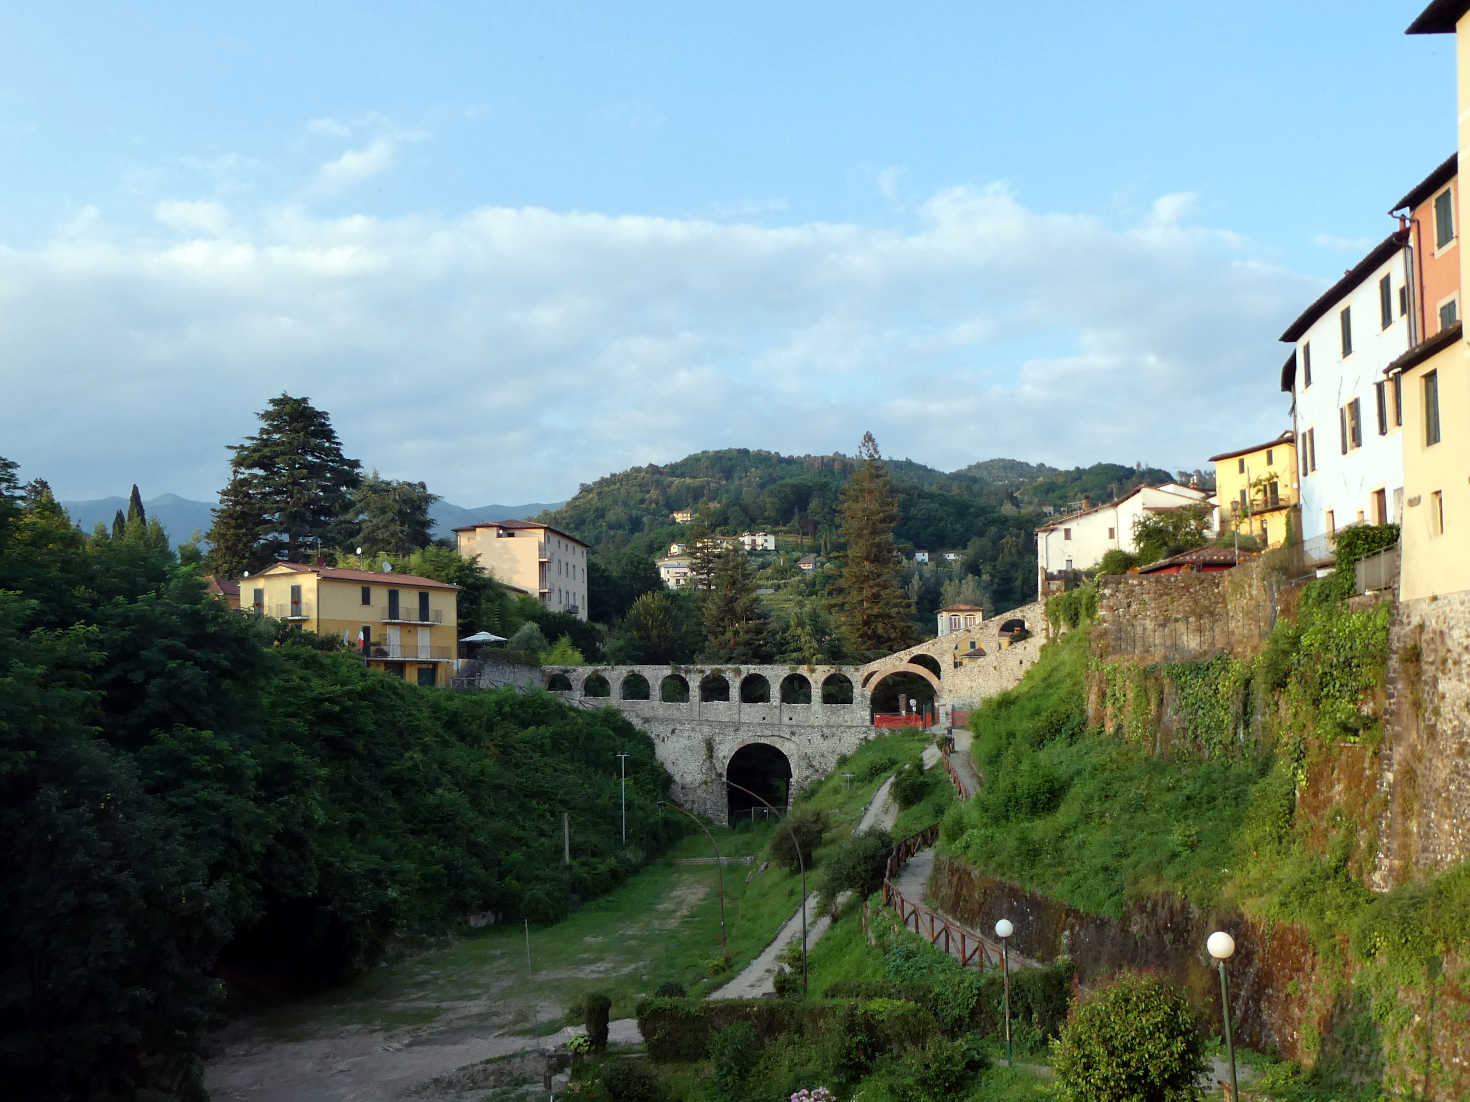 The Aquaduct in Barga